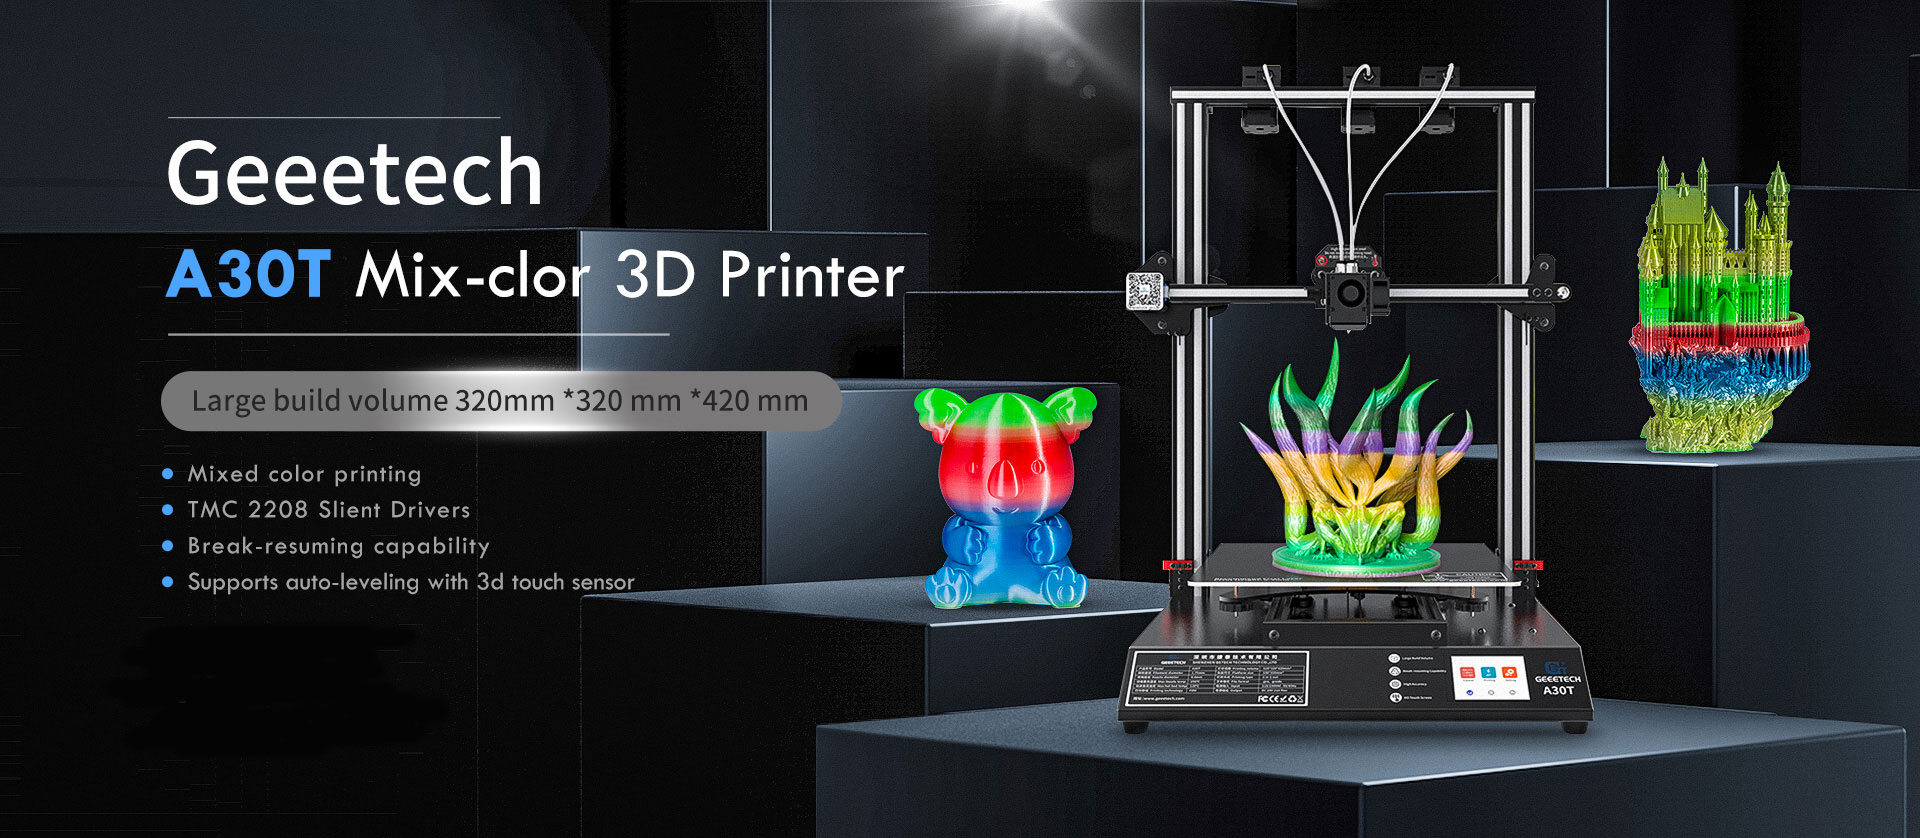 Geeetech A30T 3D Printer